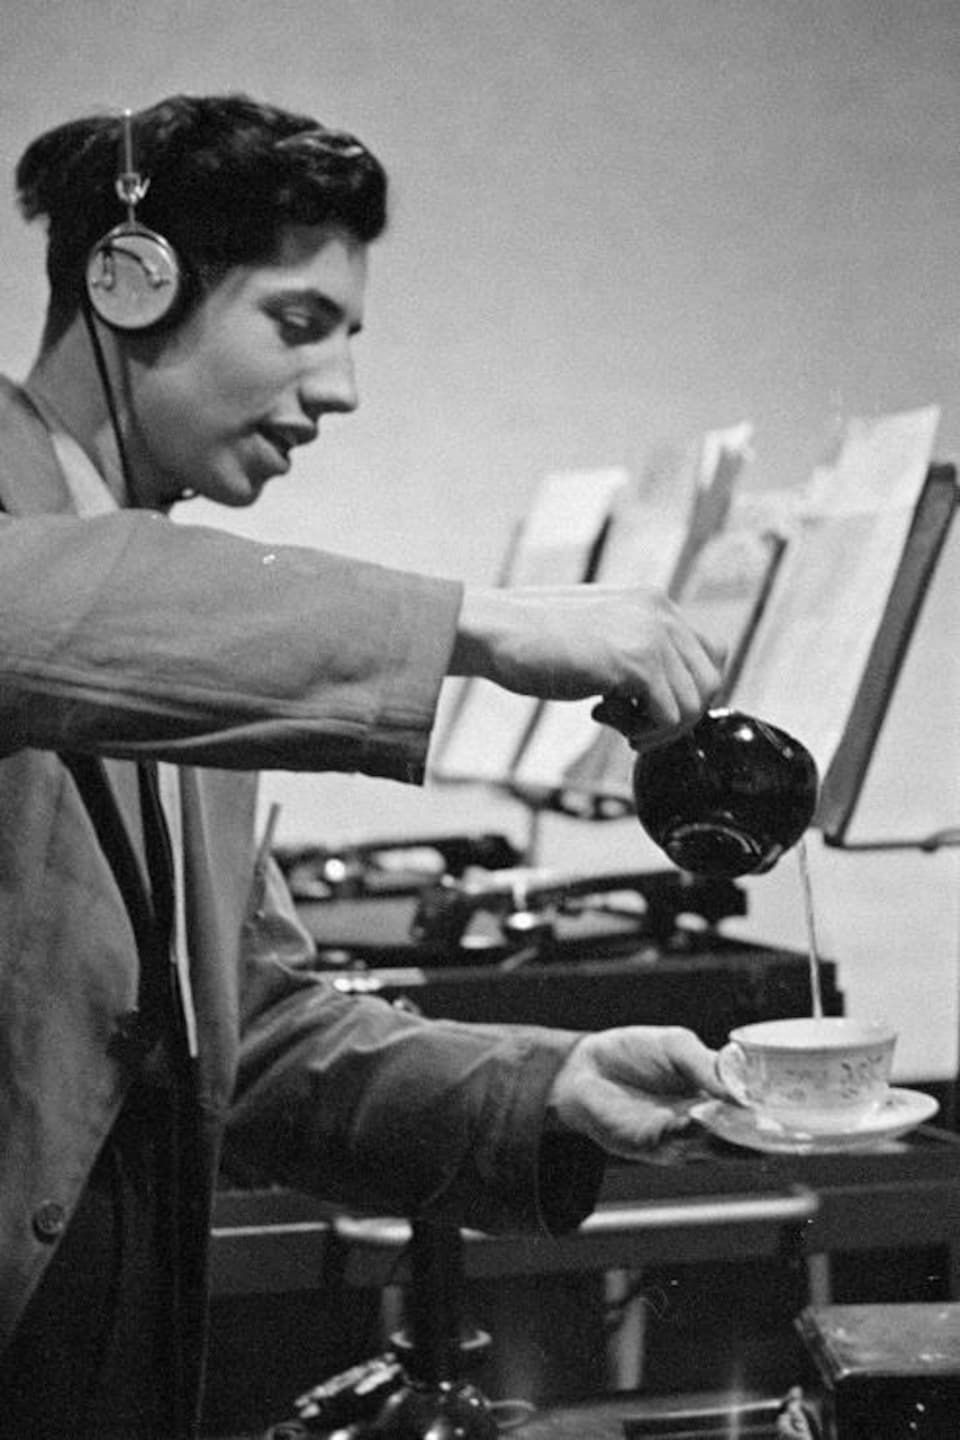 Dans un studio de radio, derrière un microphone sur pied, le bruiteur Marcel Giguère produit le son de l'eau versé dans une tasse.